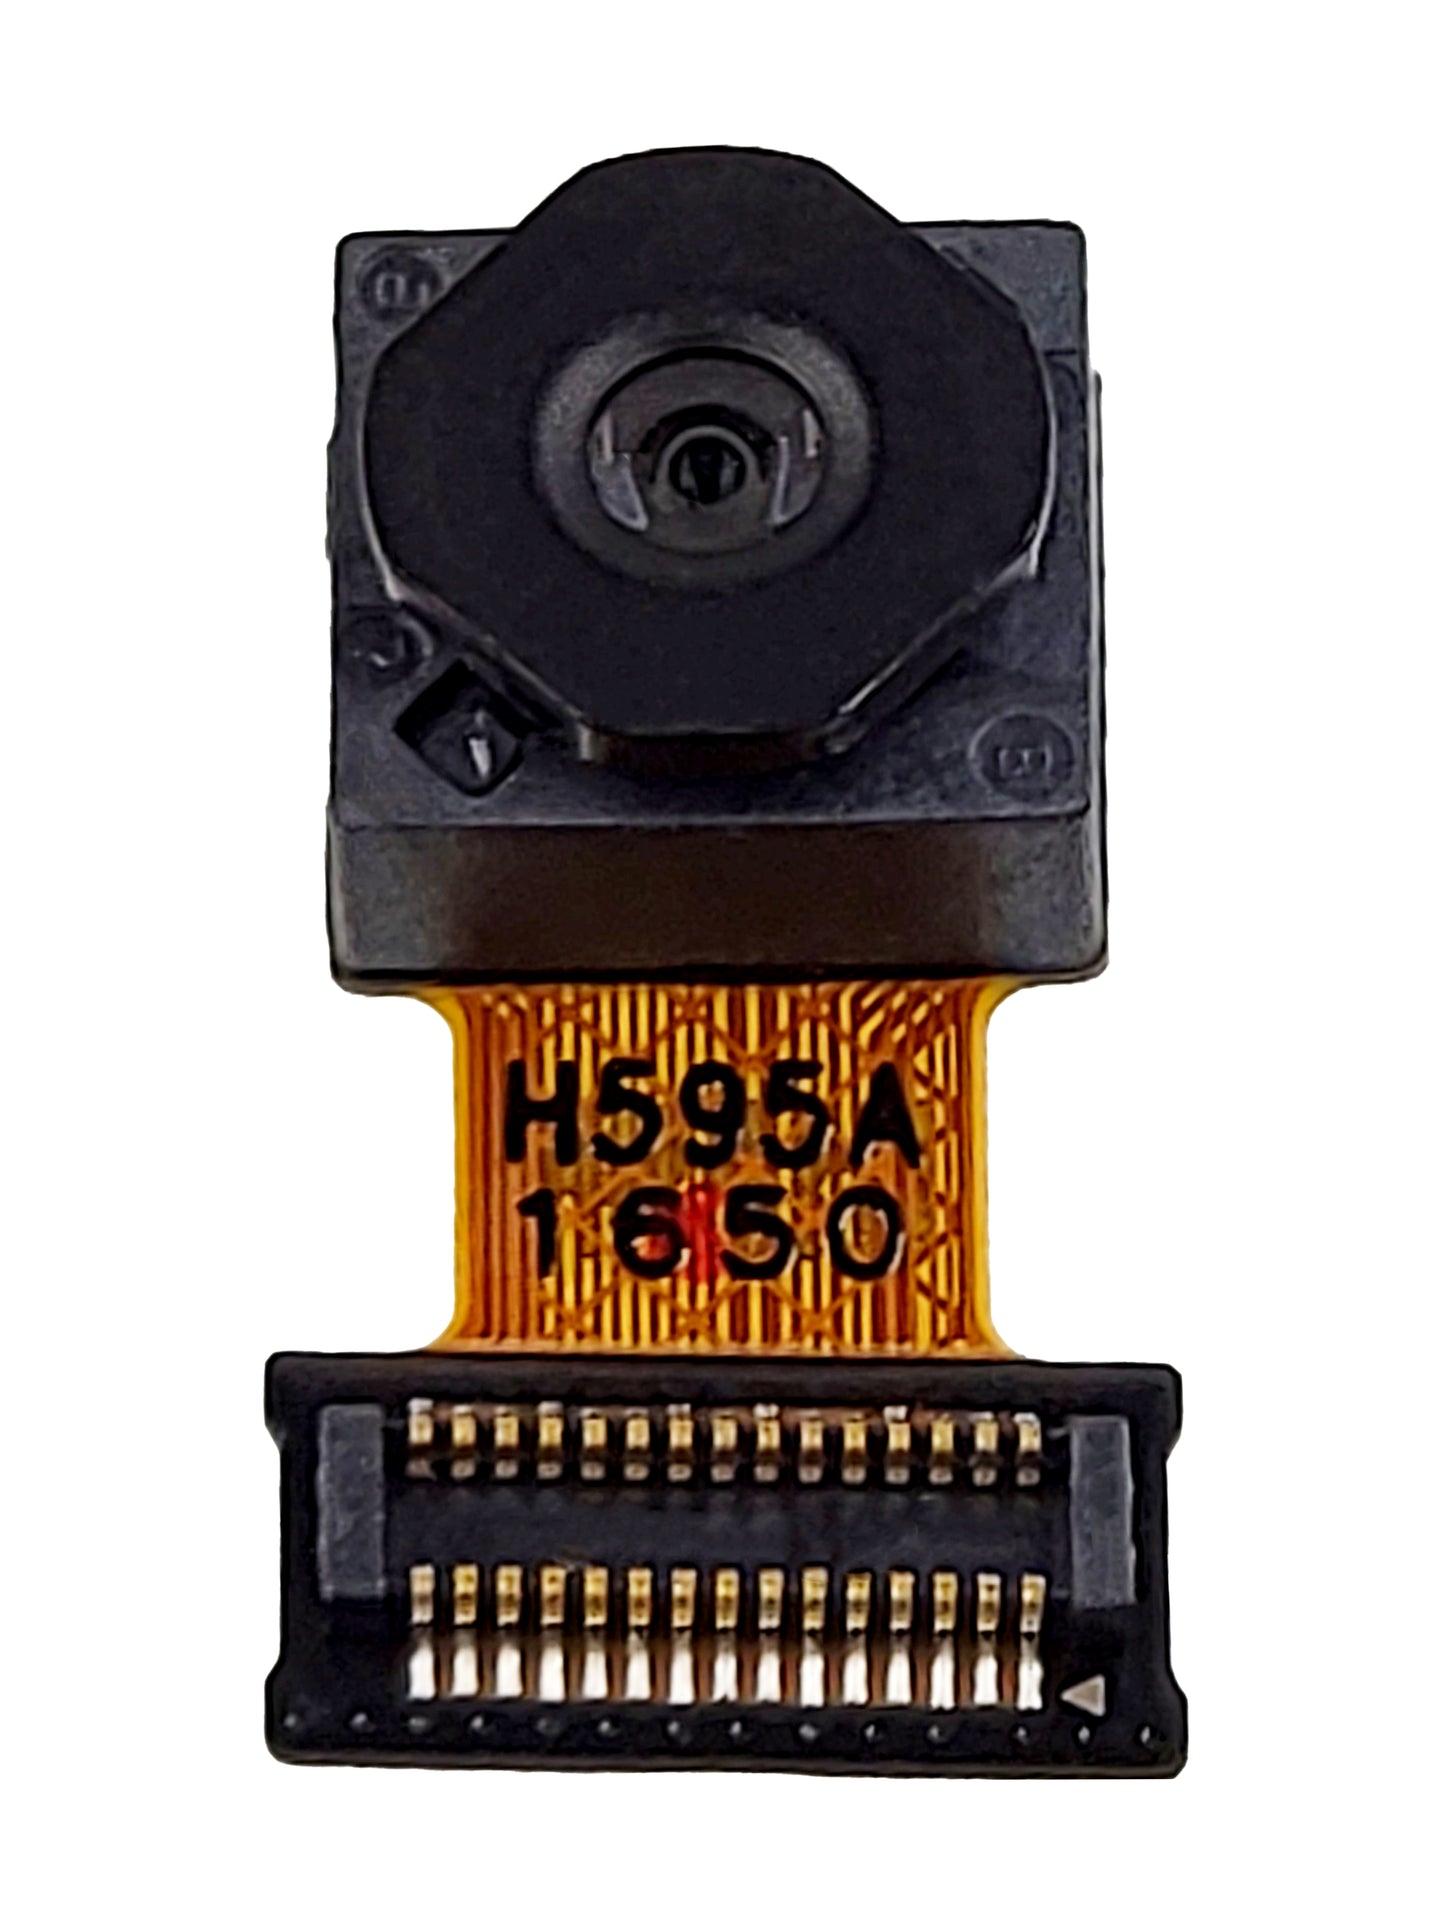 LGV V20 Front Camera